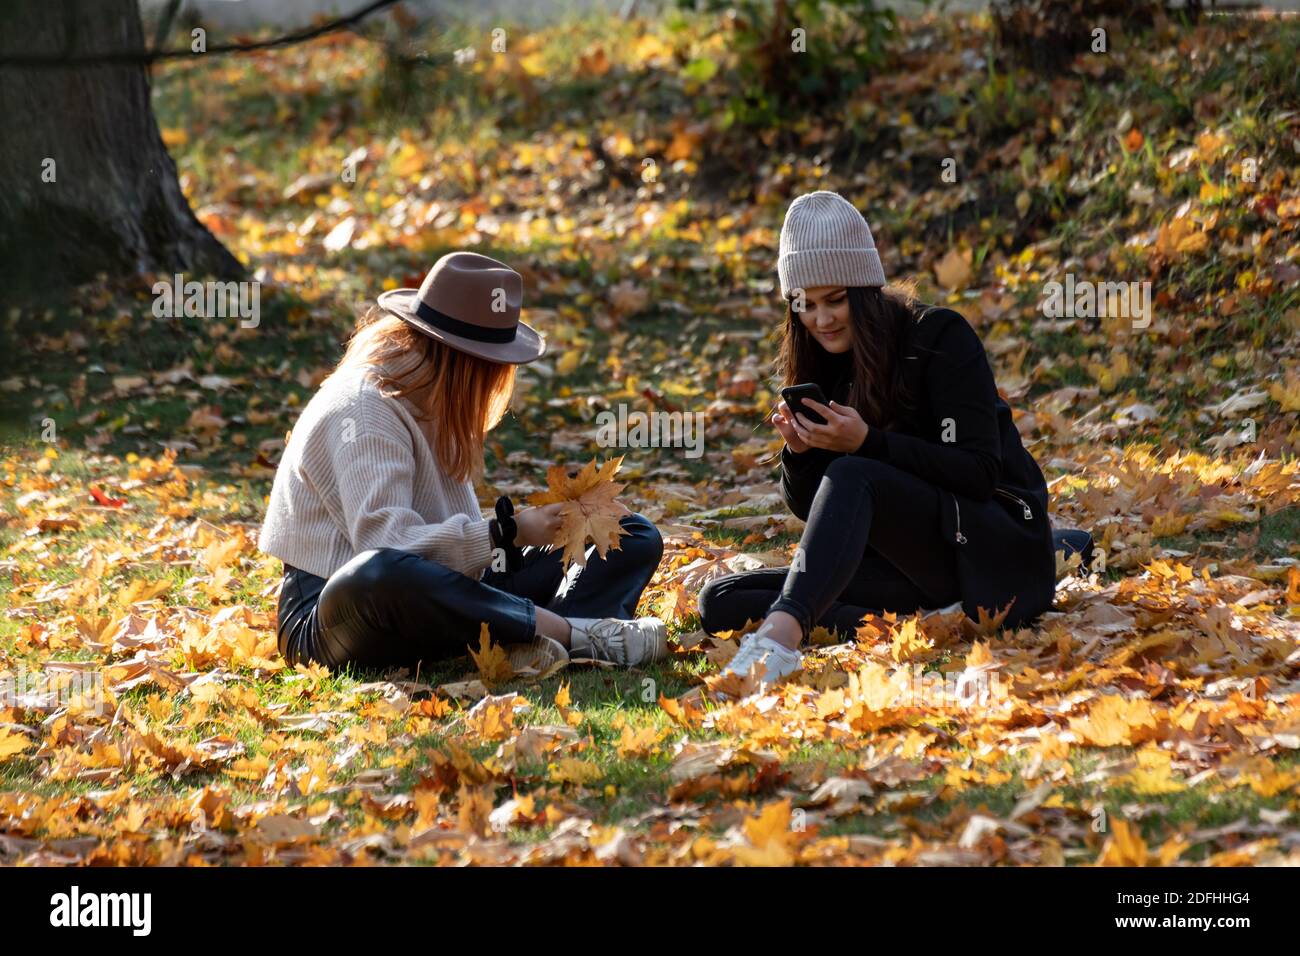 Mujeres jóvenes sentadas en el césped en el parque con hojas caídas y colores otoñales Foto de stock